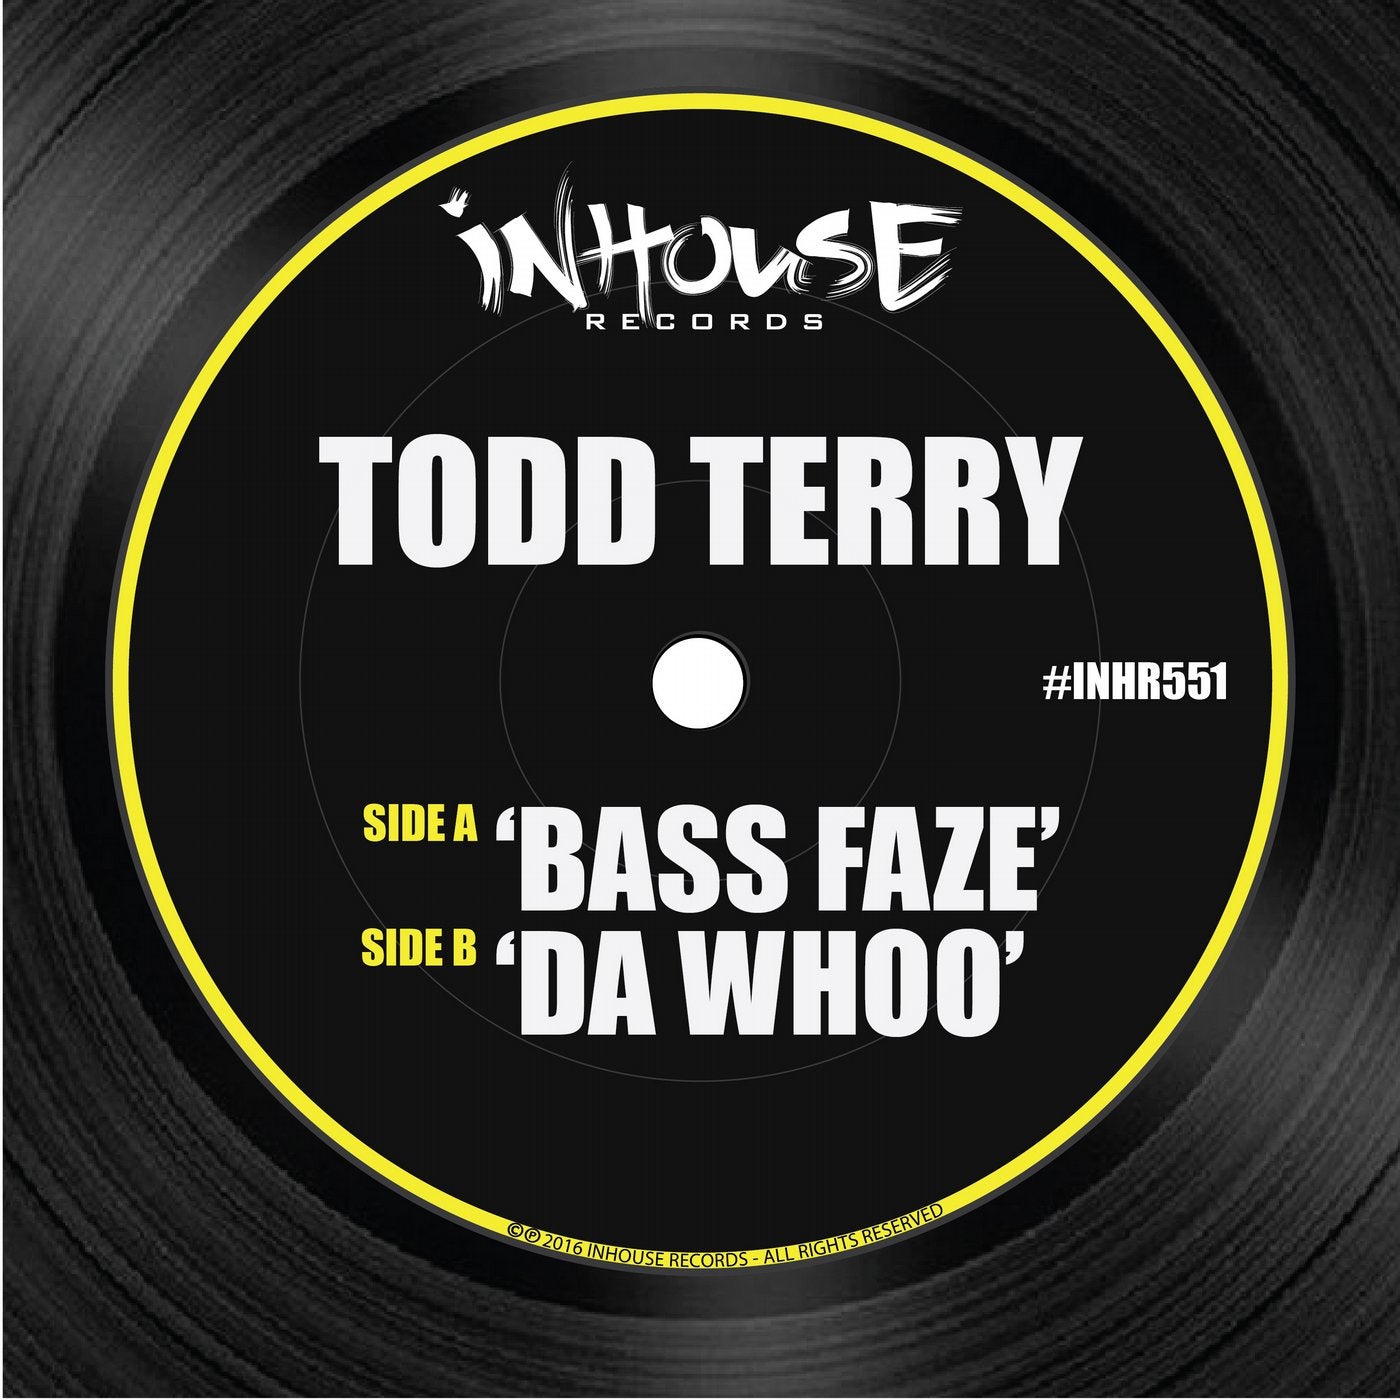 Bass Faze & Da Whoo